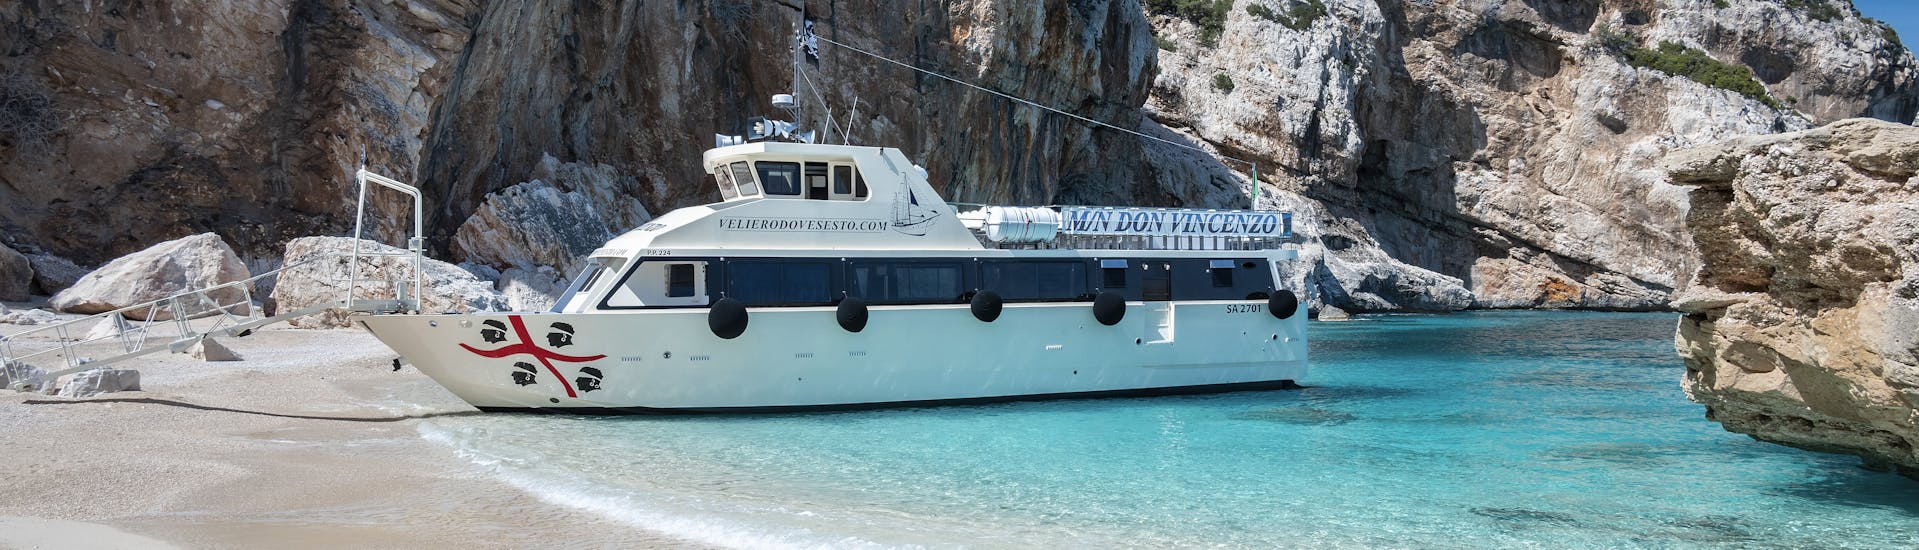 La barca che userete durante la Gita in barca VIP da Cala Gonone con soste a Cala Mariolu e Arbatax con buffet con Dovesesto Cala Gonone.